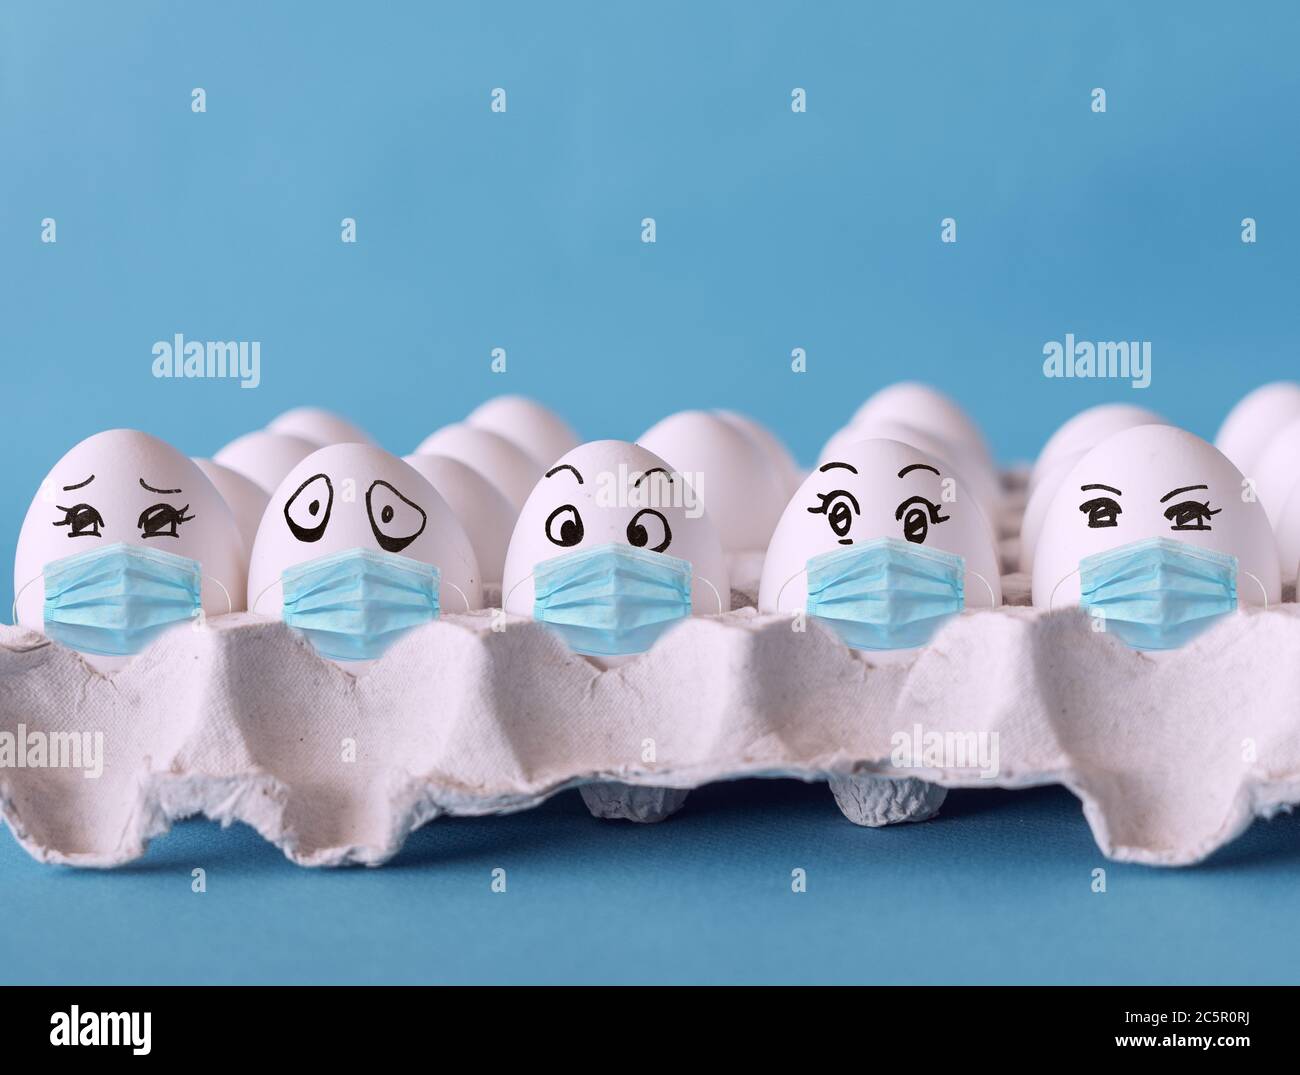 Gesichter auf den Eiern, Eier mit Gesichtsmaske, Corona-Virus-Epidemie-Konzept Stockfoto